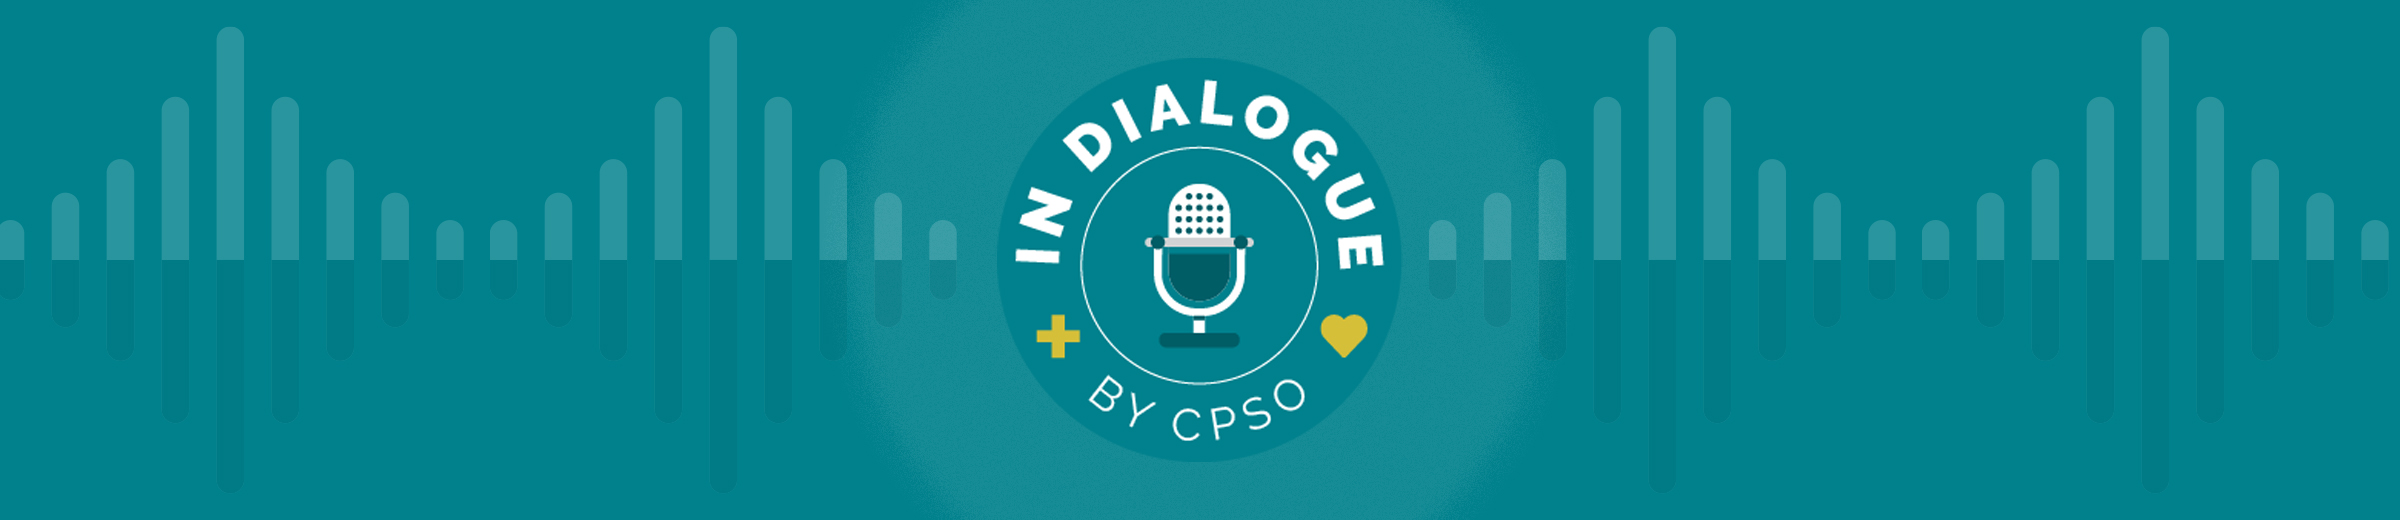 In Dialogue logo banner